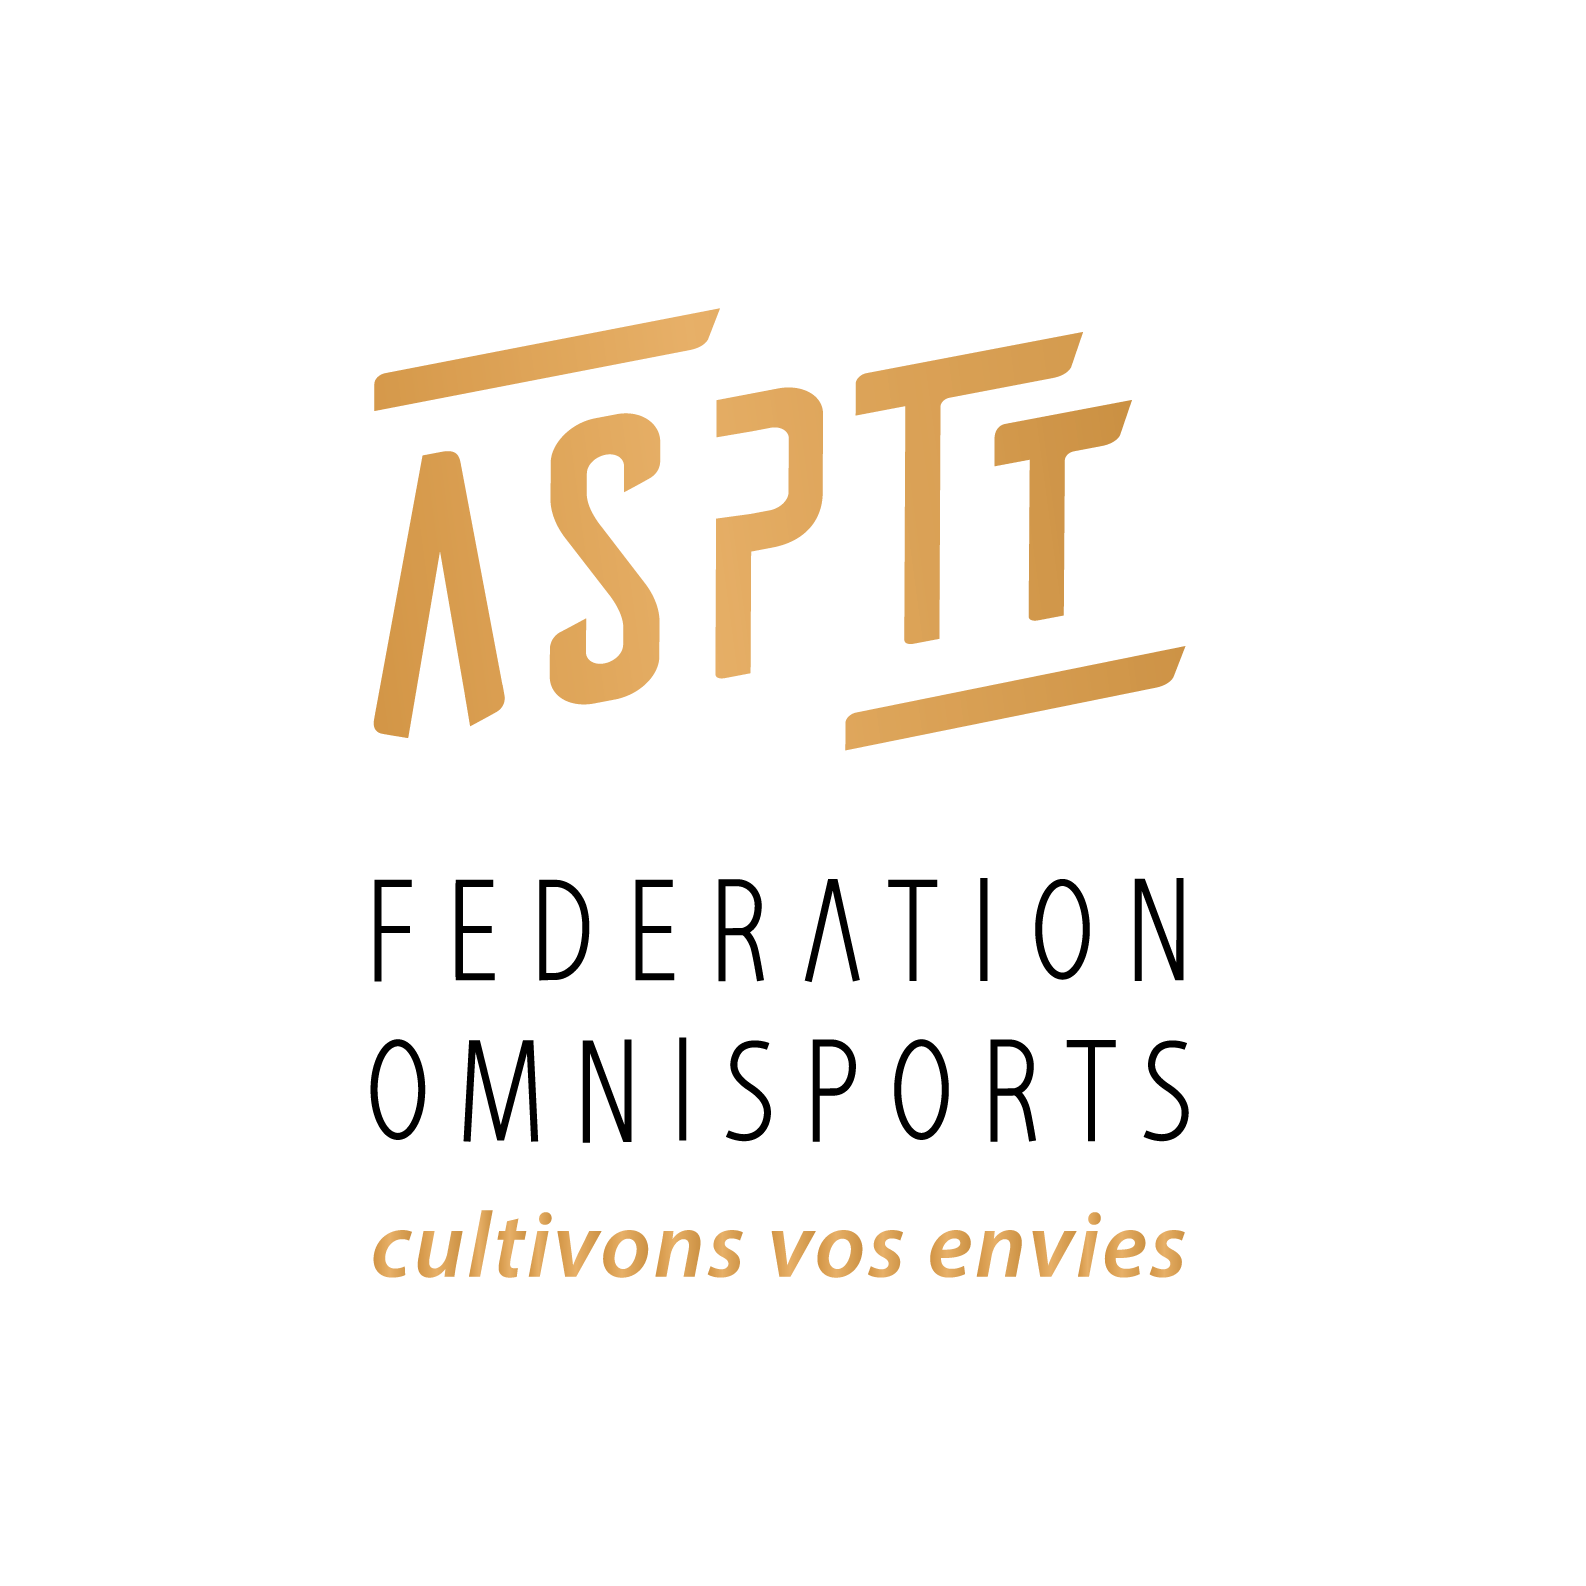 ASPTT Fédération Omnisports | Cultivons vos envies